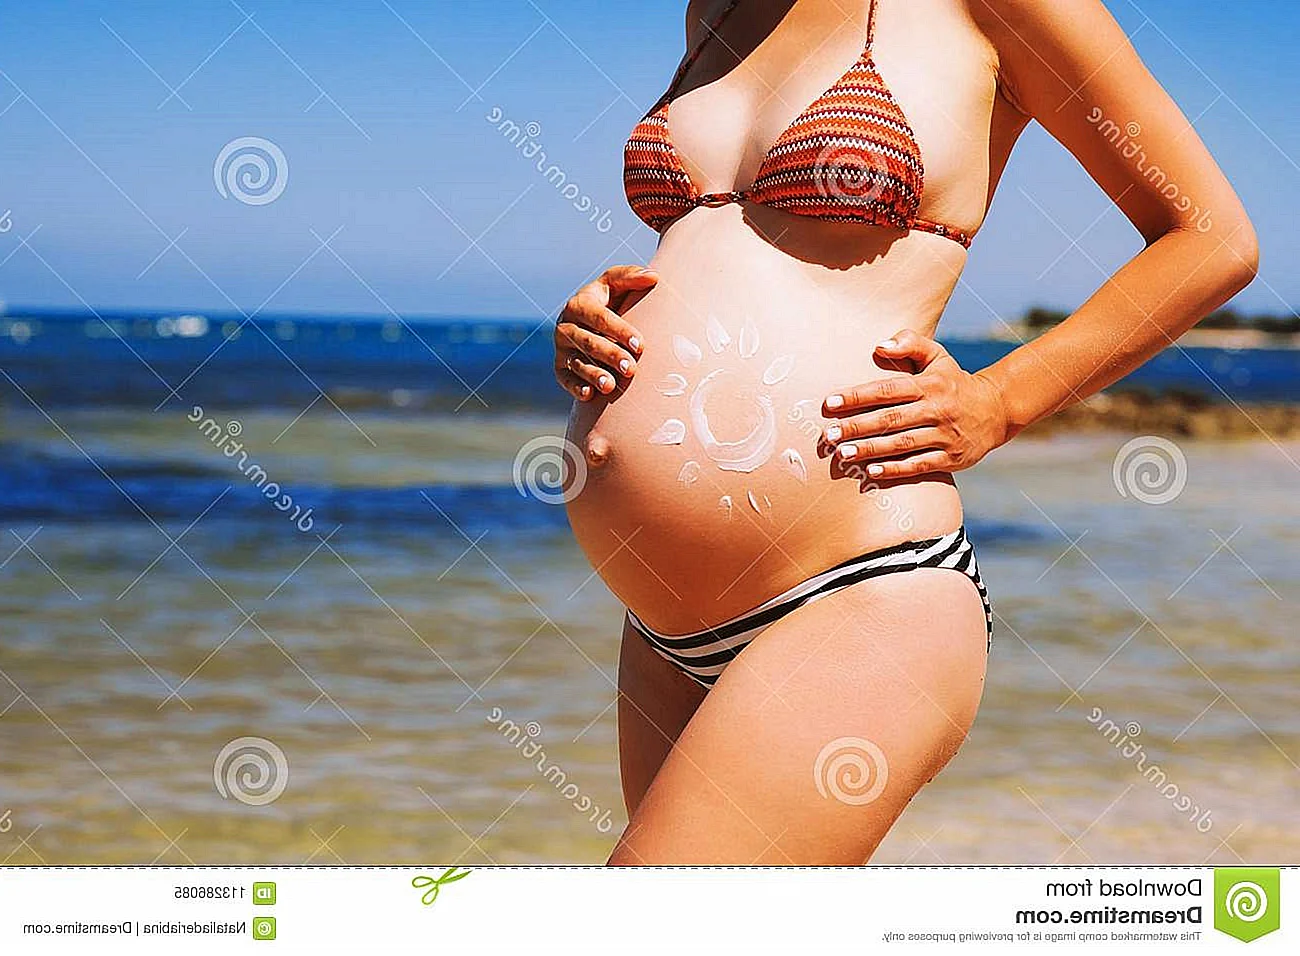 Красивый беременный животик на пляже